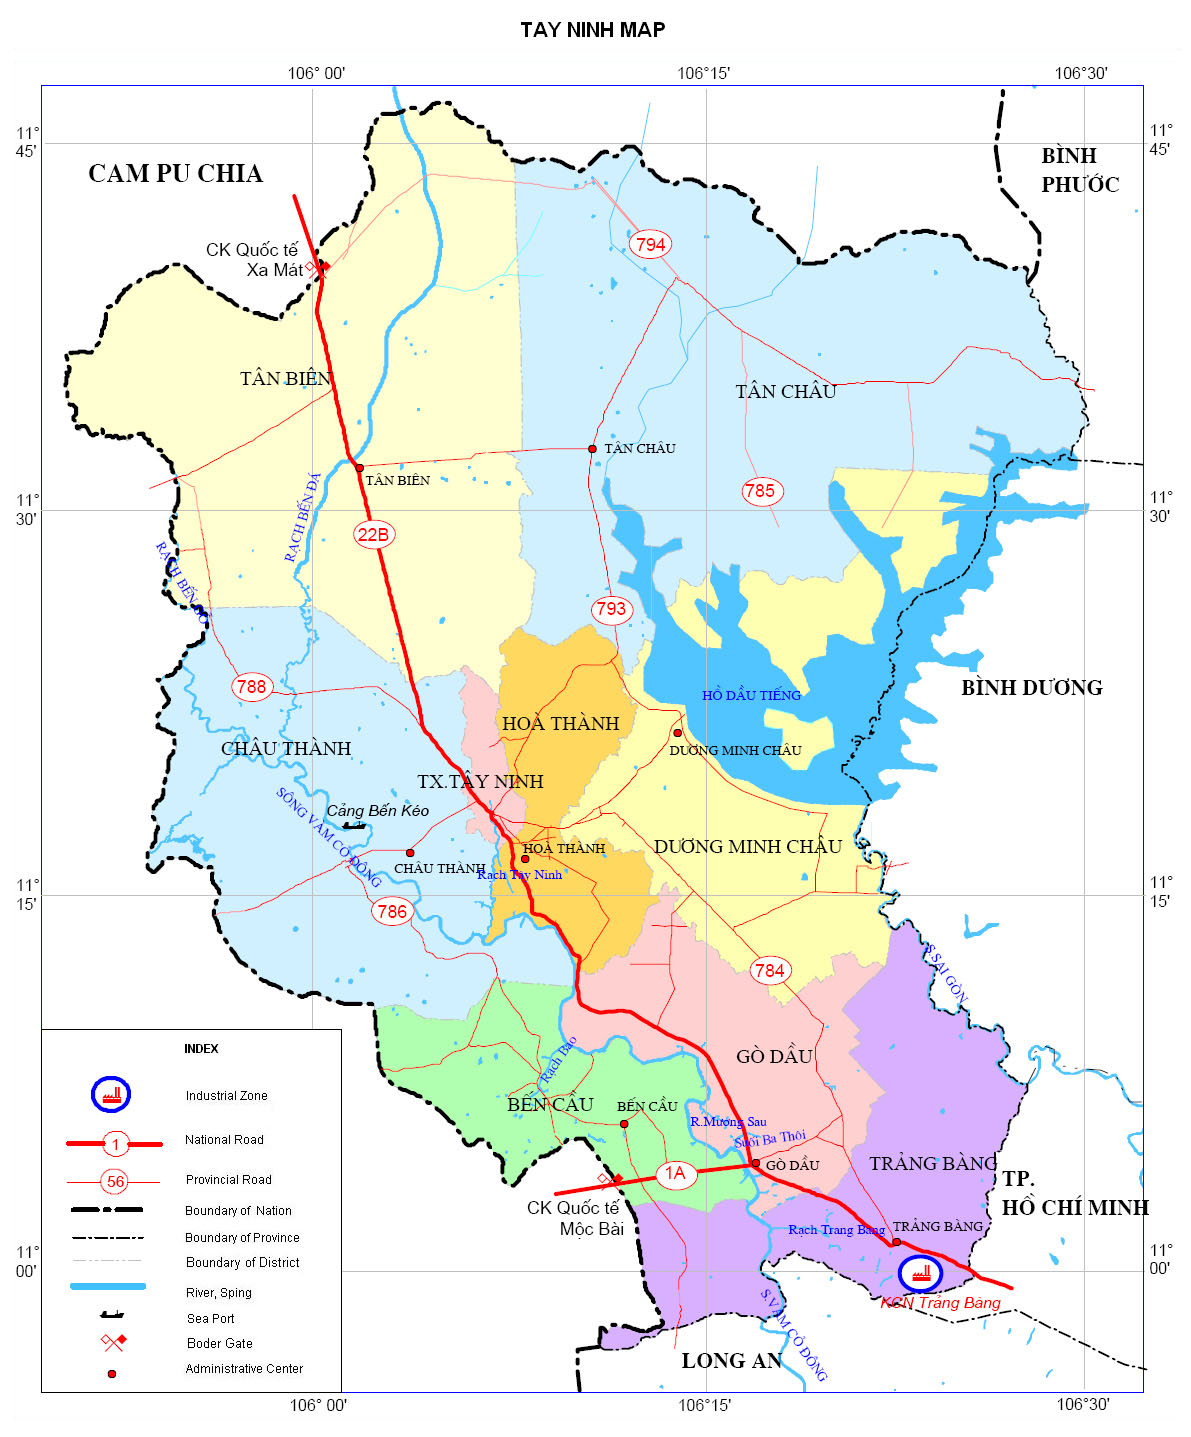 Tây Ninh: Giá đất ở huyện cao hơn thành phố - CafeLand.Vn